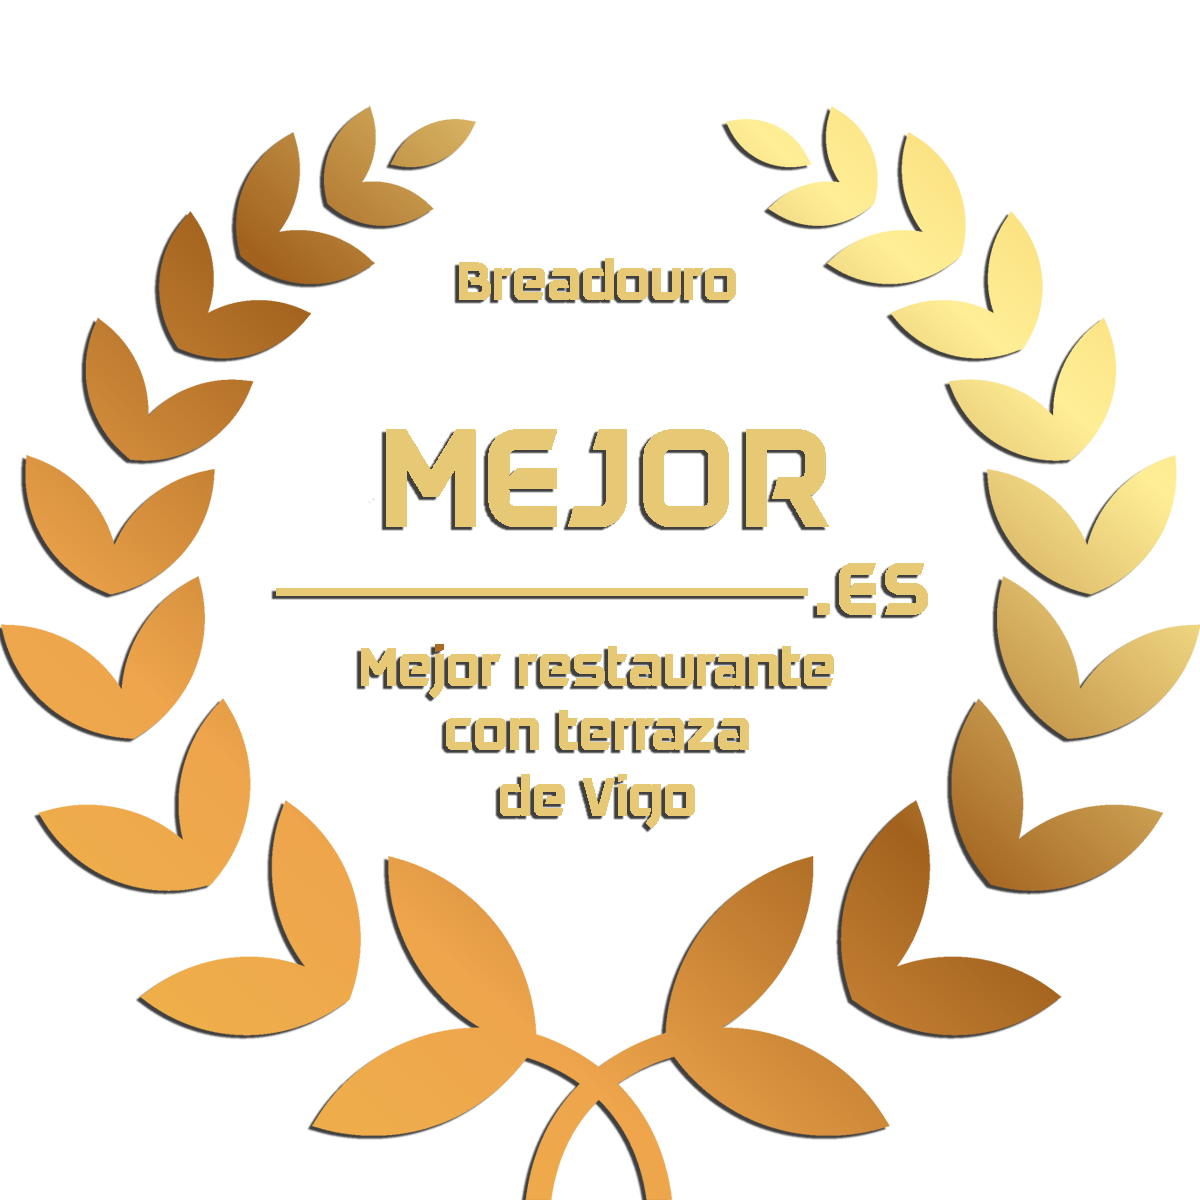 Breadouro Café&Restaurante